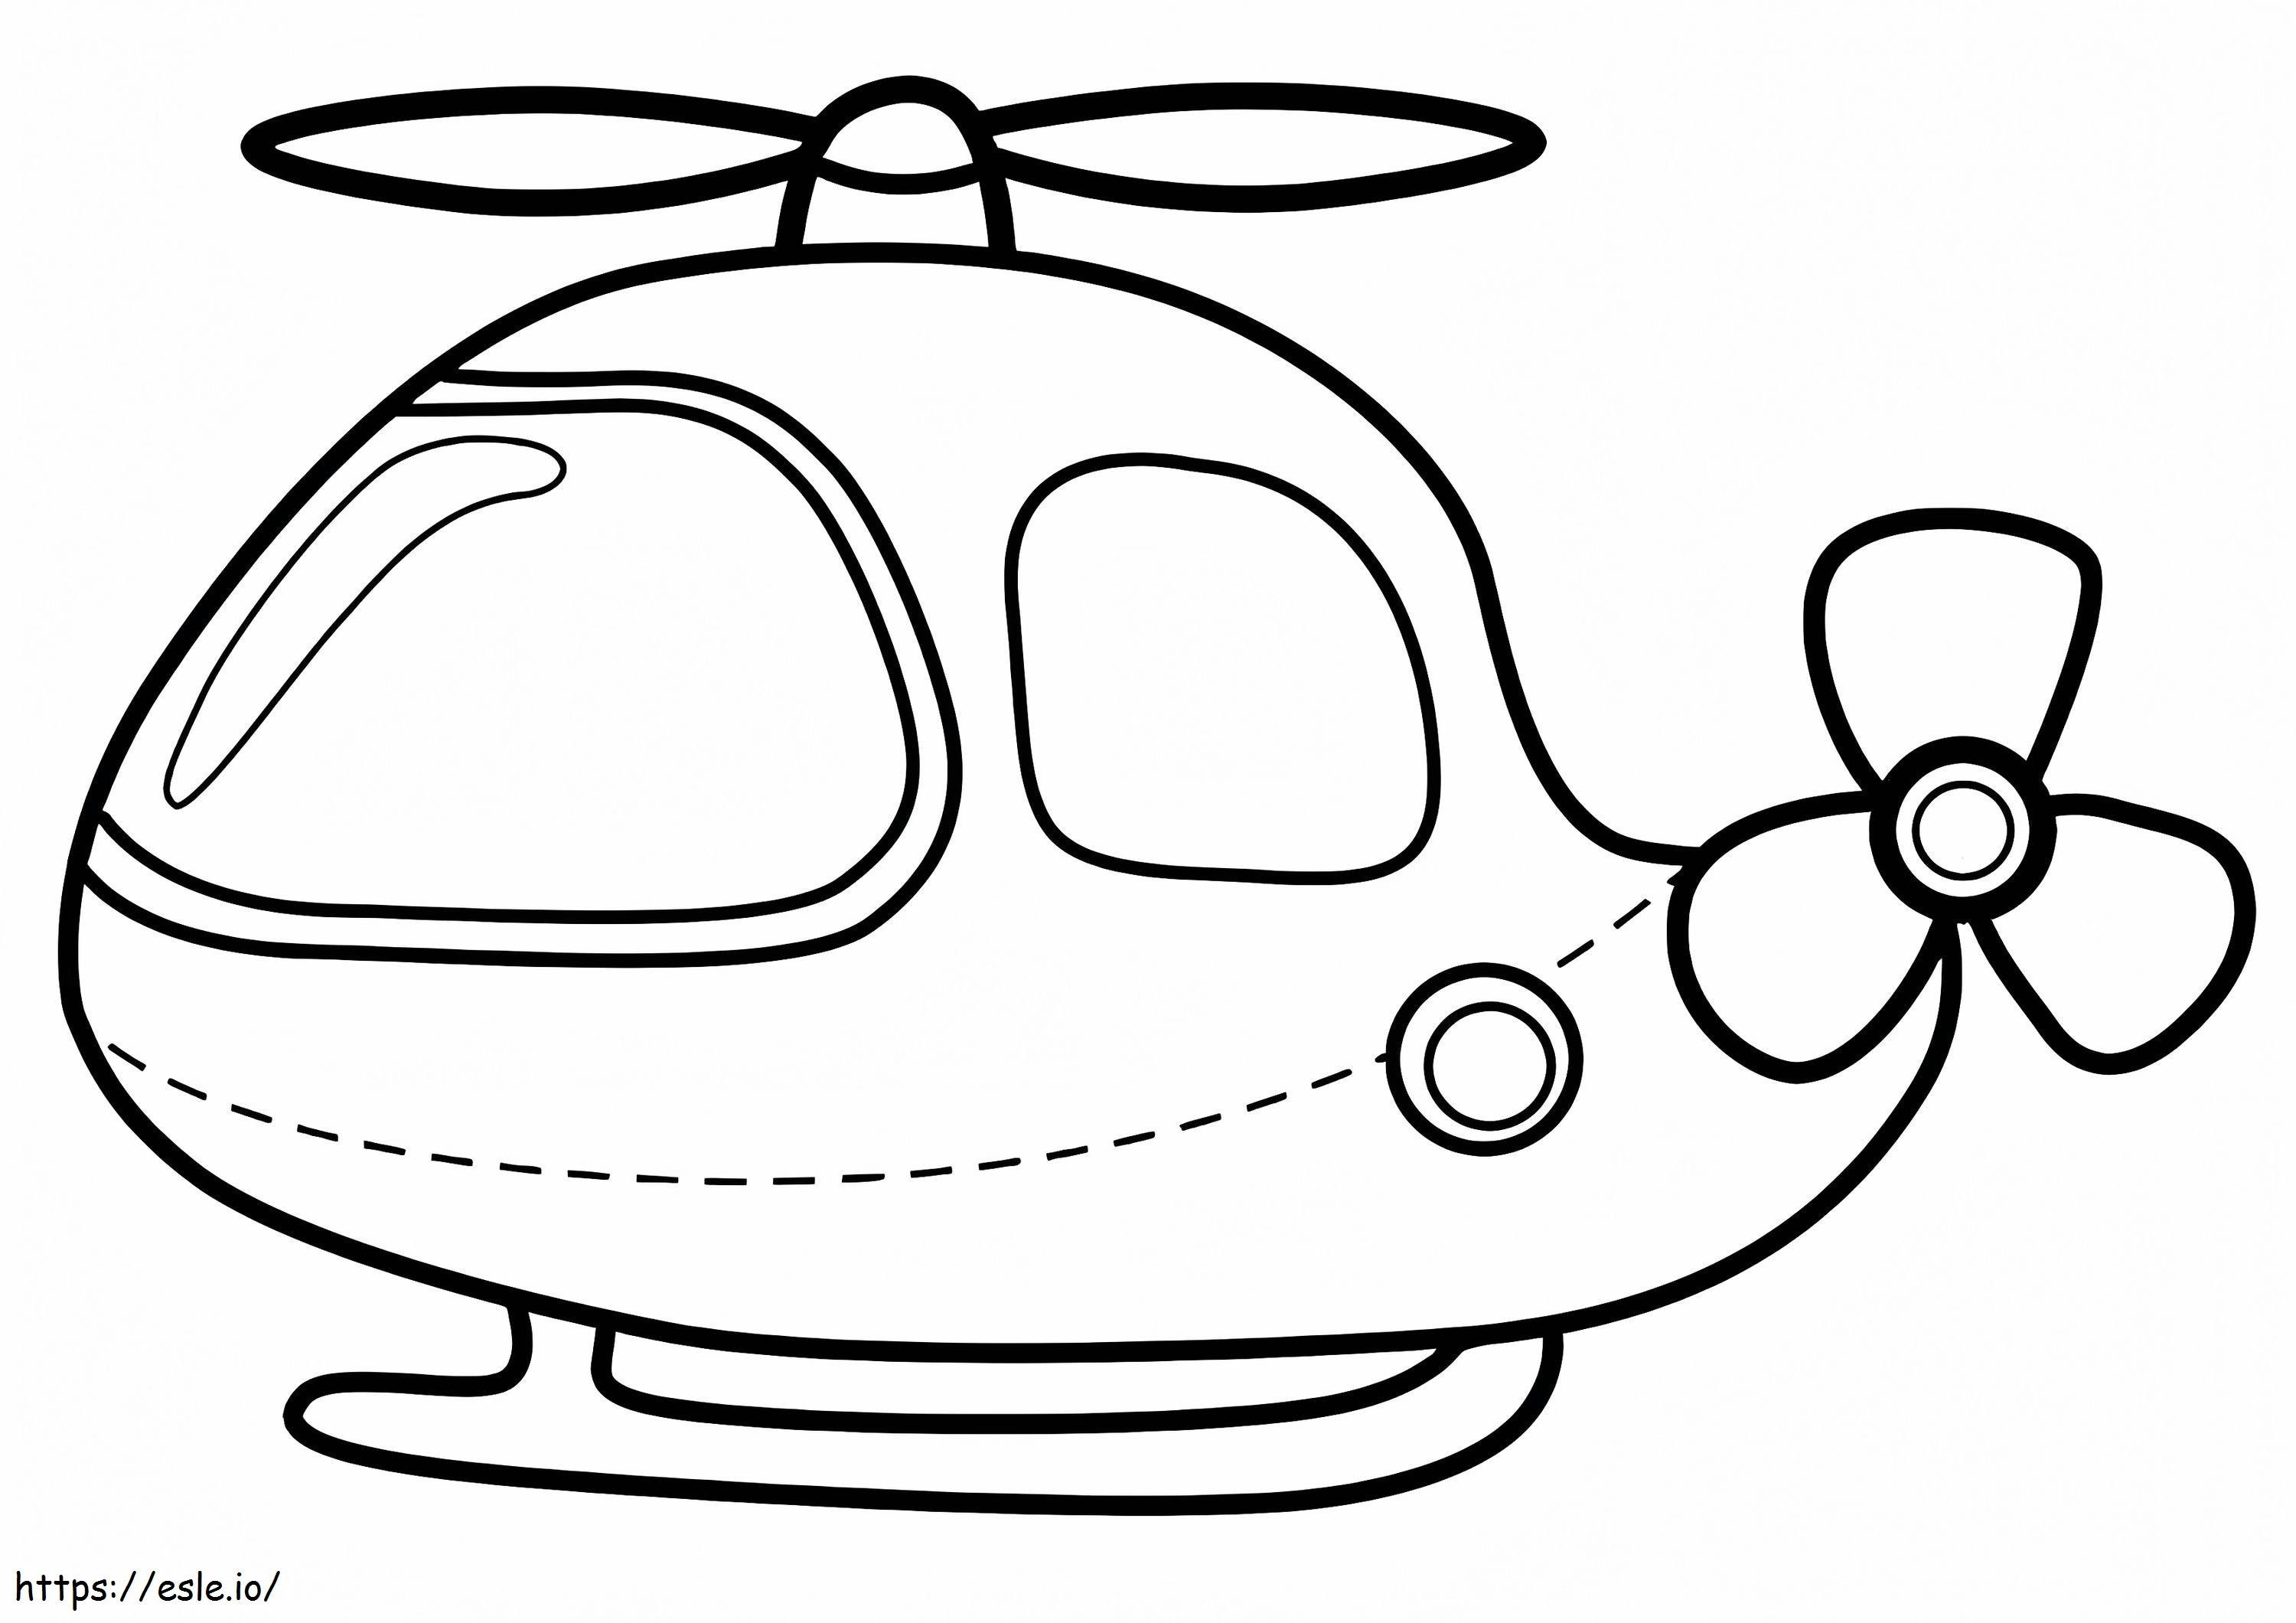  Ein süß aussehender Hubschrauber A4 E1600074315918 ausmalbilder